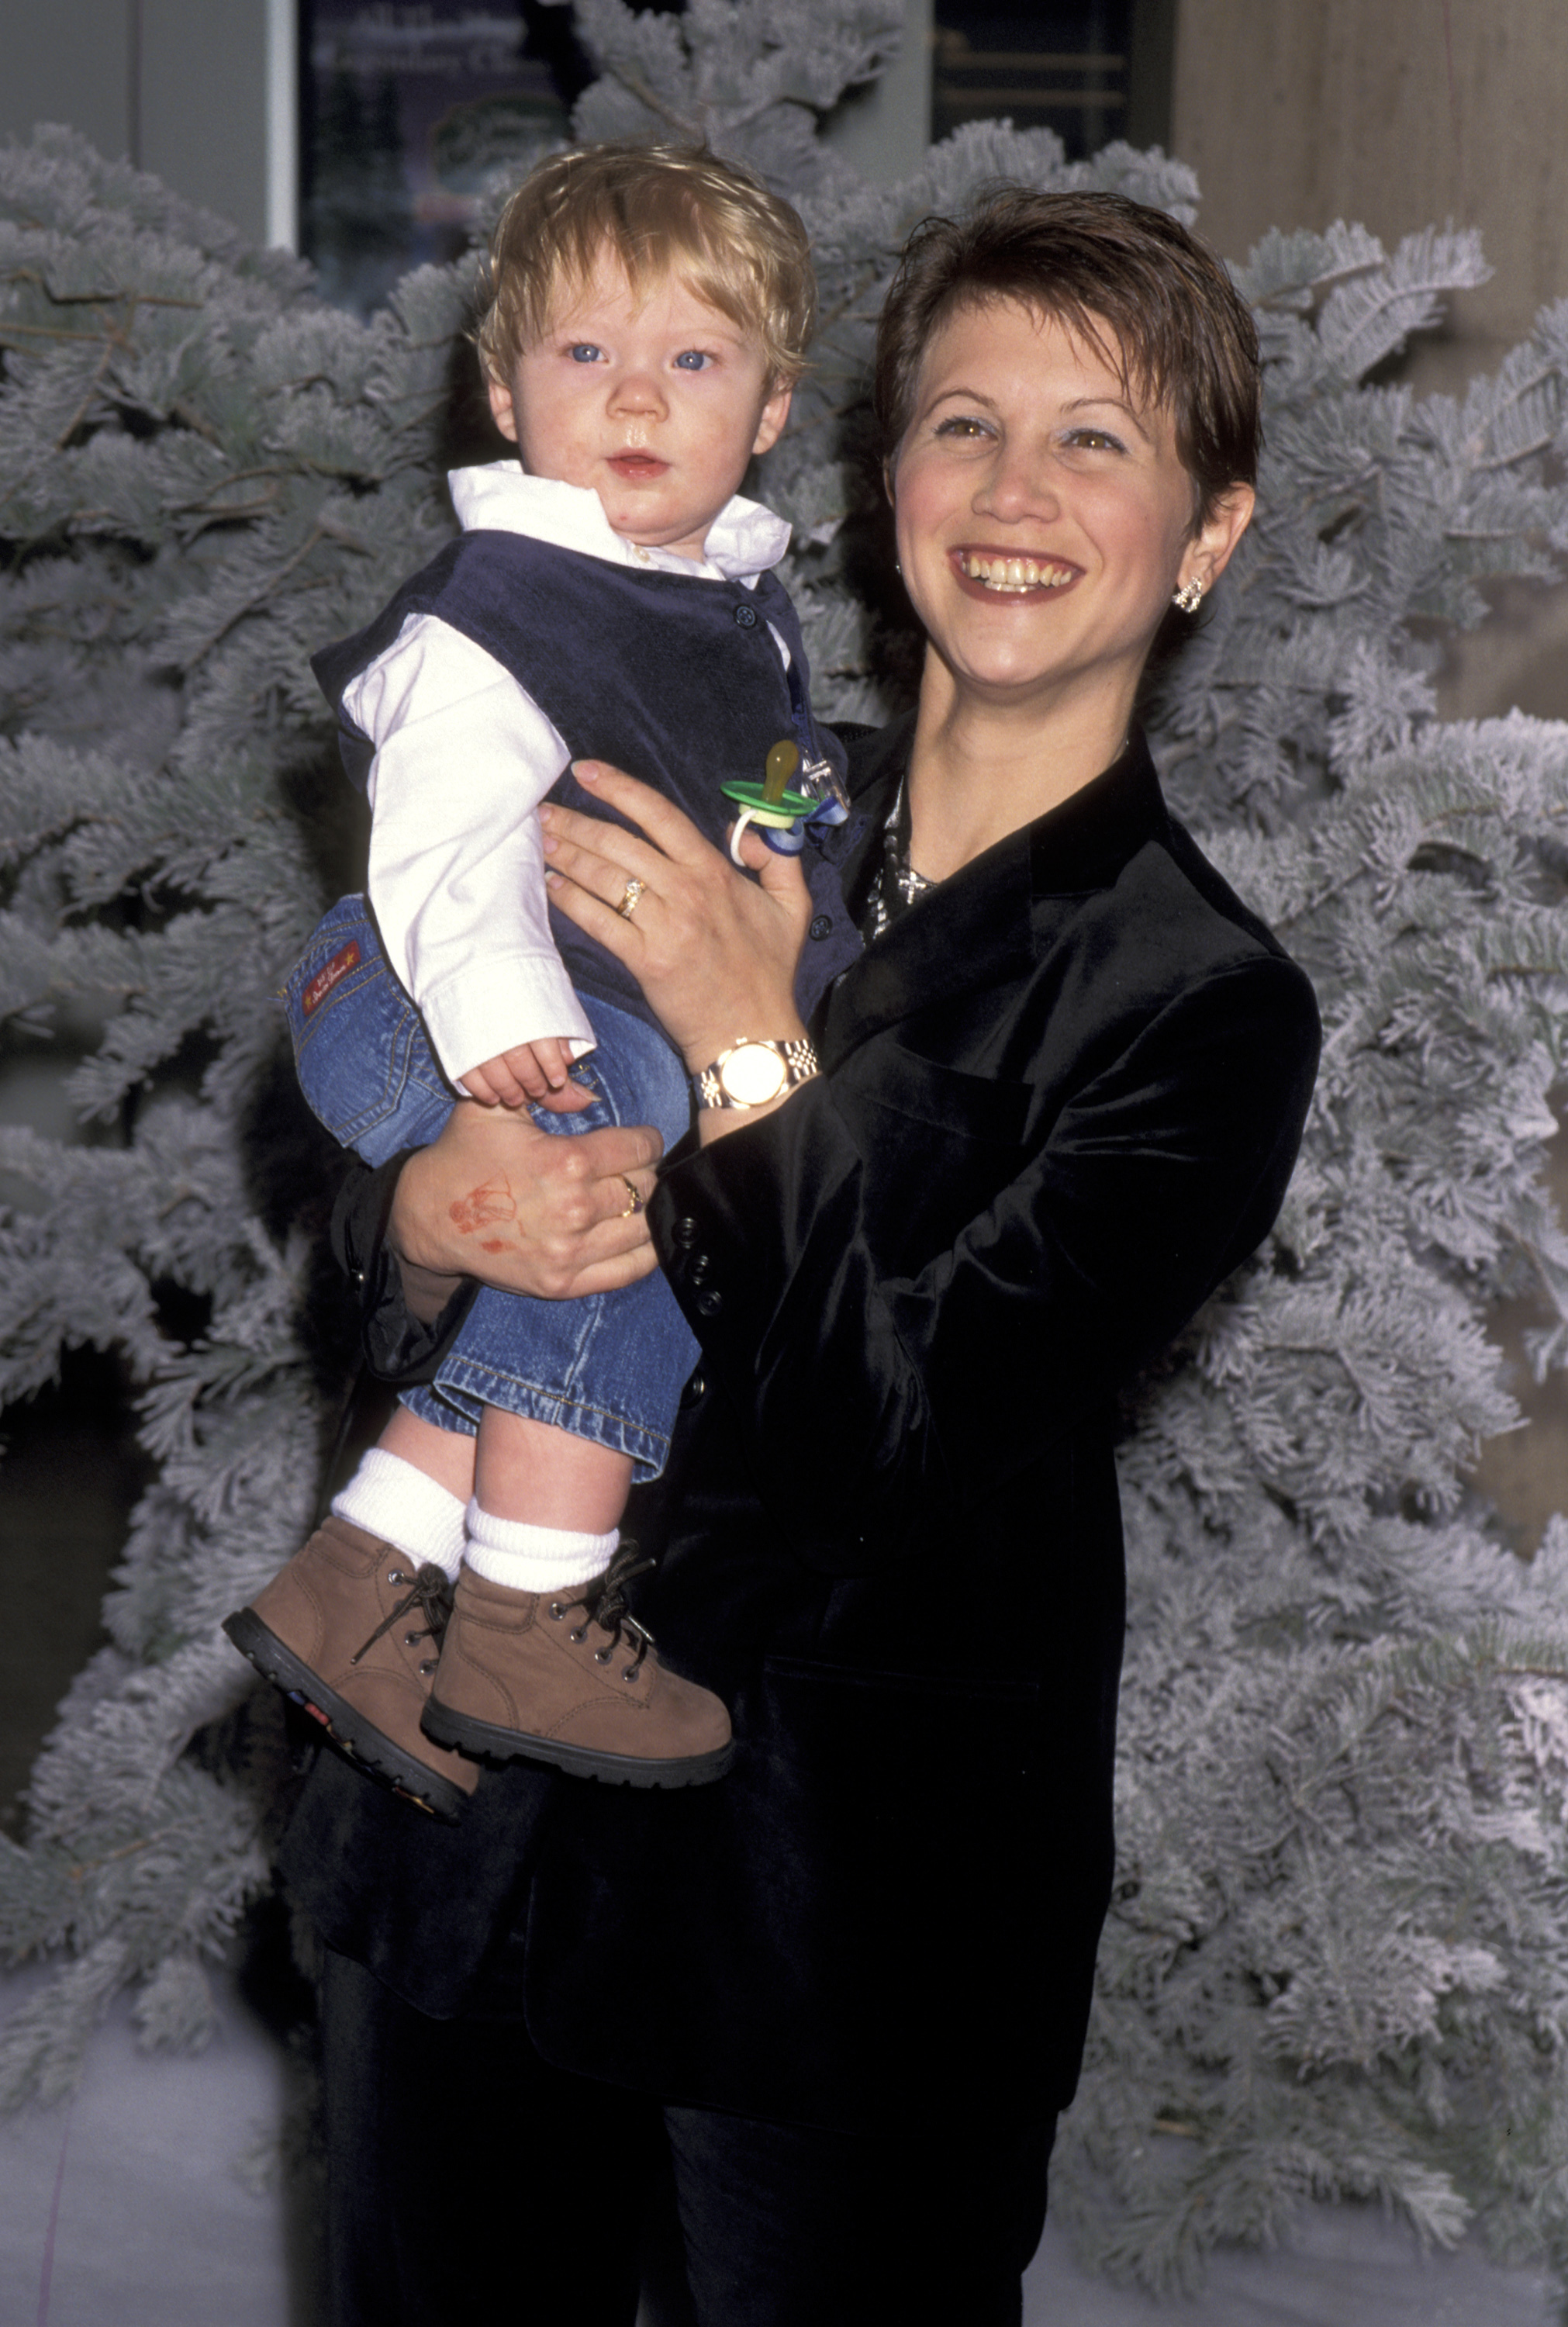 Tracey Gold et son fils lors de la célébration de la sortie vidéo du film "La Belle et la Bête" de Disney, le 6 novembre 1997, à Century City, en Californie. | Source : Getty Images